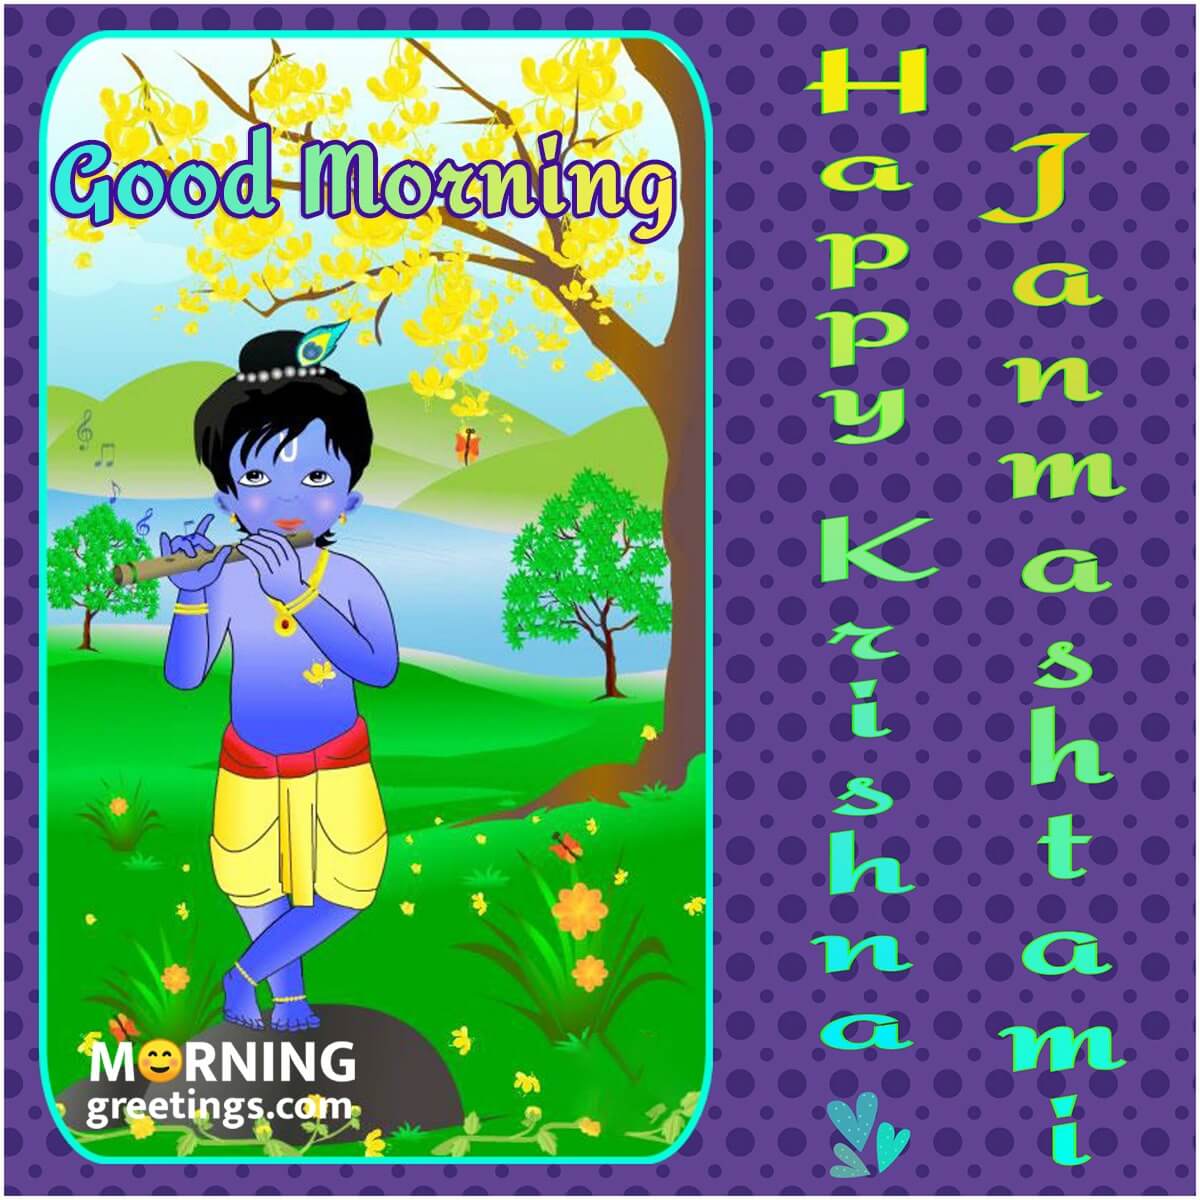 Good Morning Happy Krishna Janmashtami